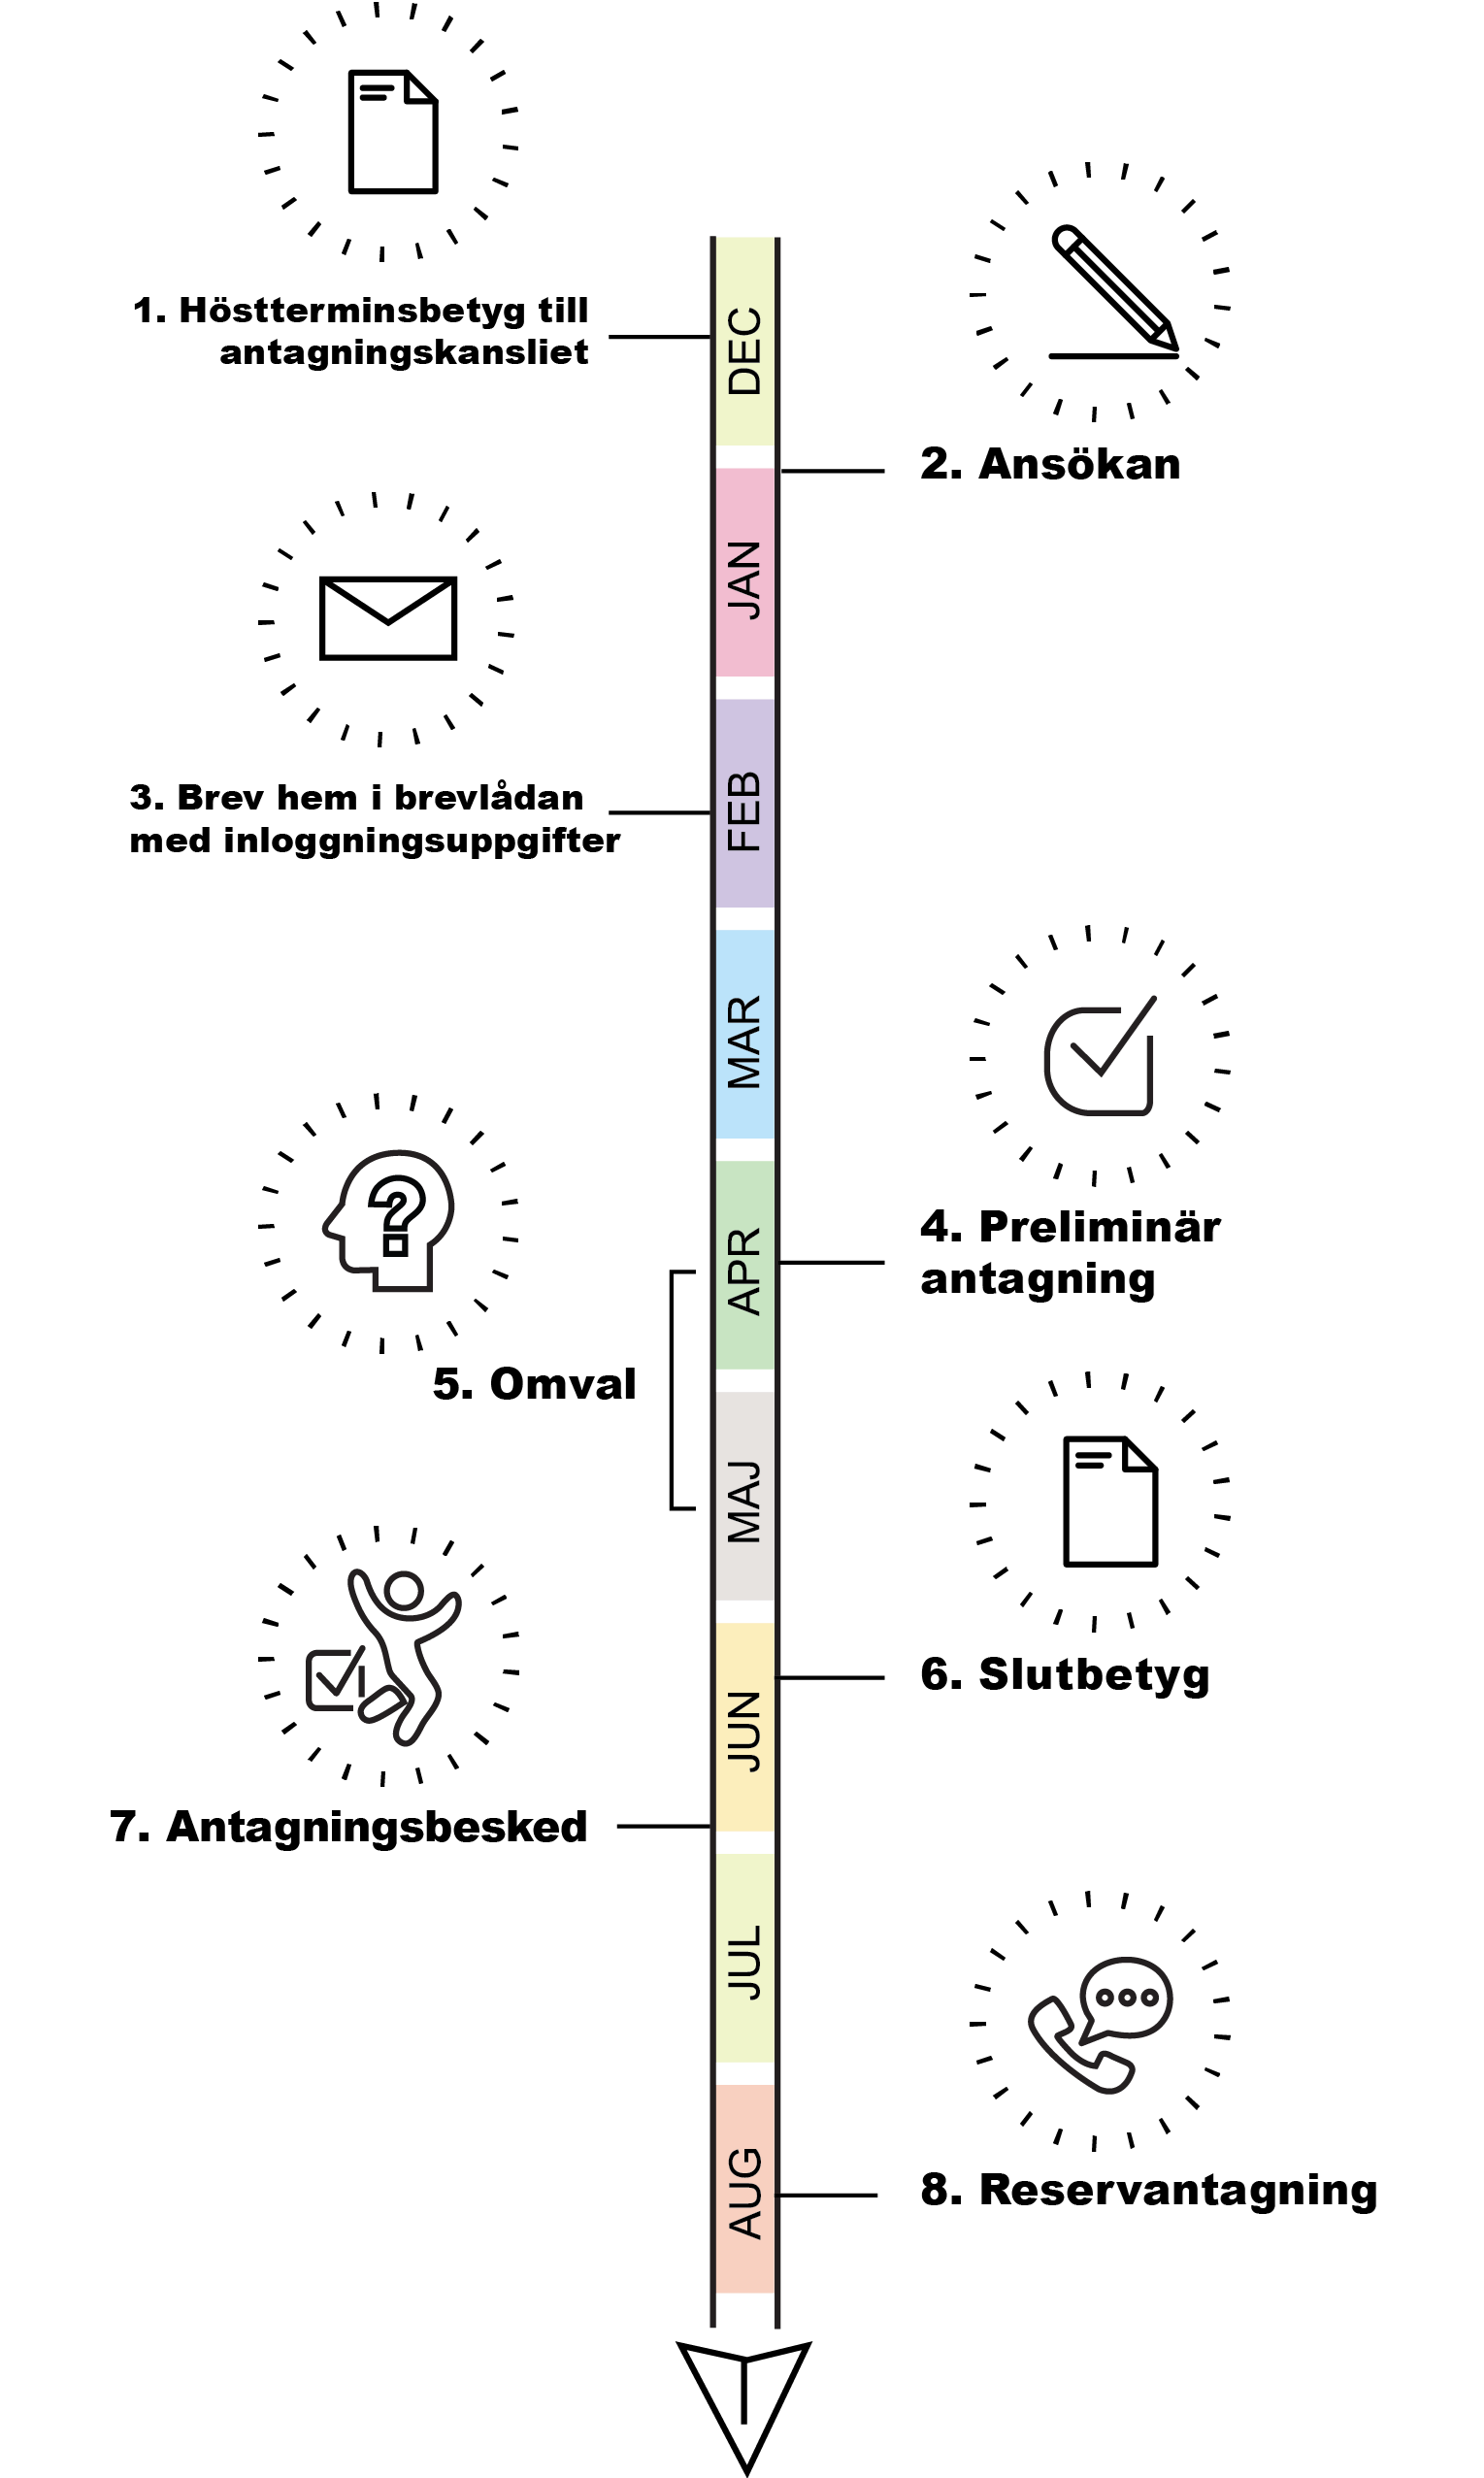 Illustration över antagningsprocessen